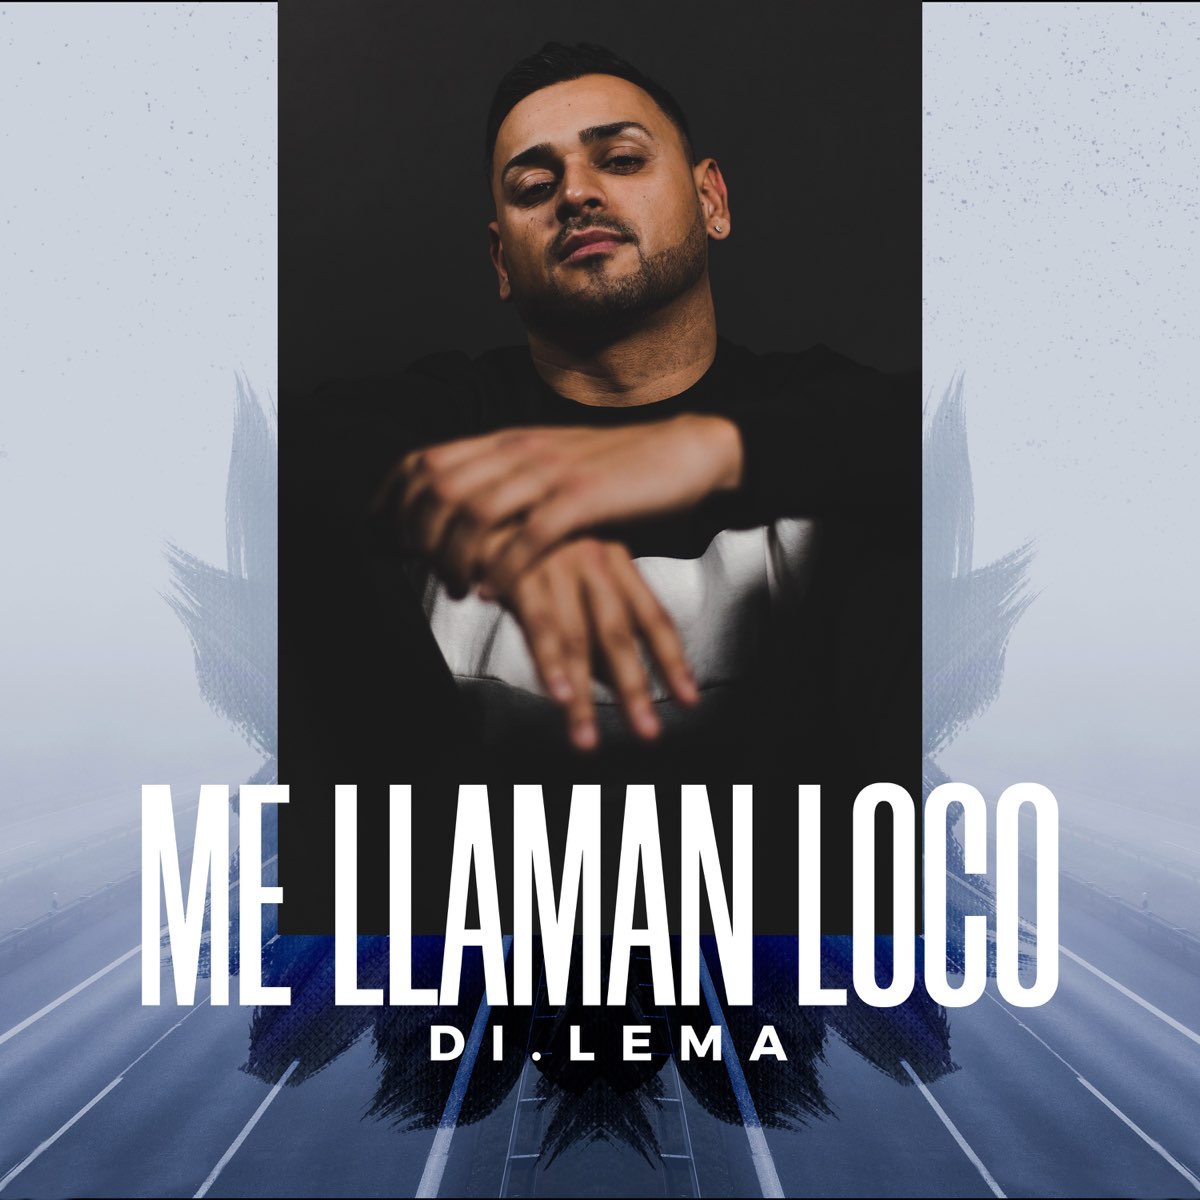 Альбом - 2019 - 1 песня. слушать, Me Llaman Loco - Single, Dilema, музыка, ...